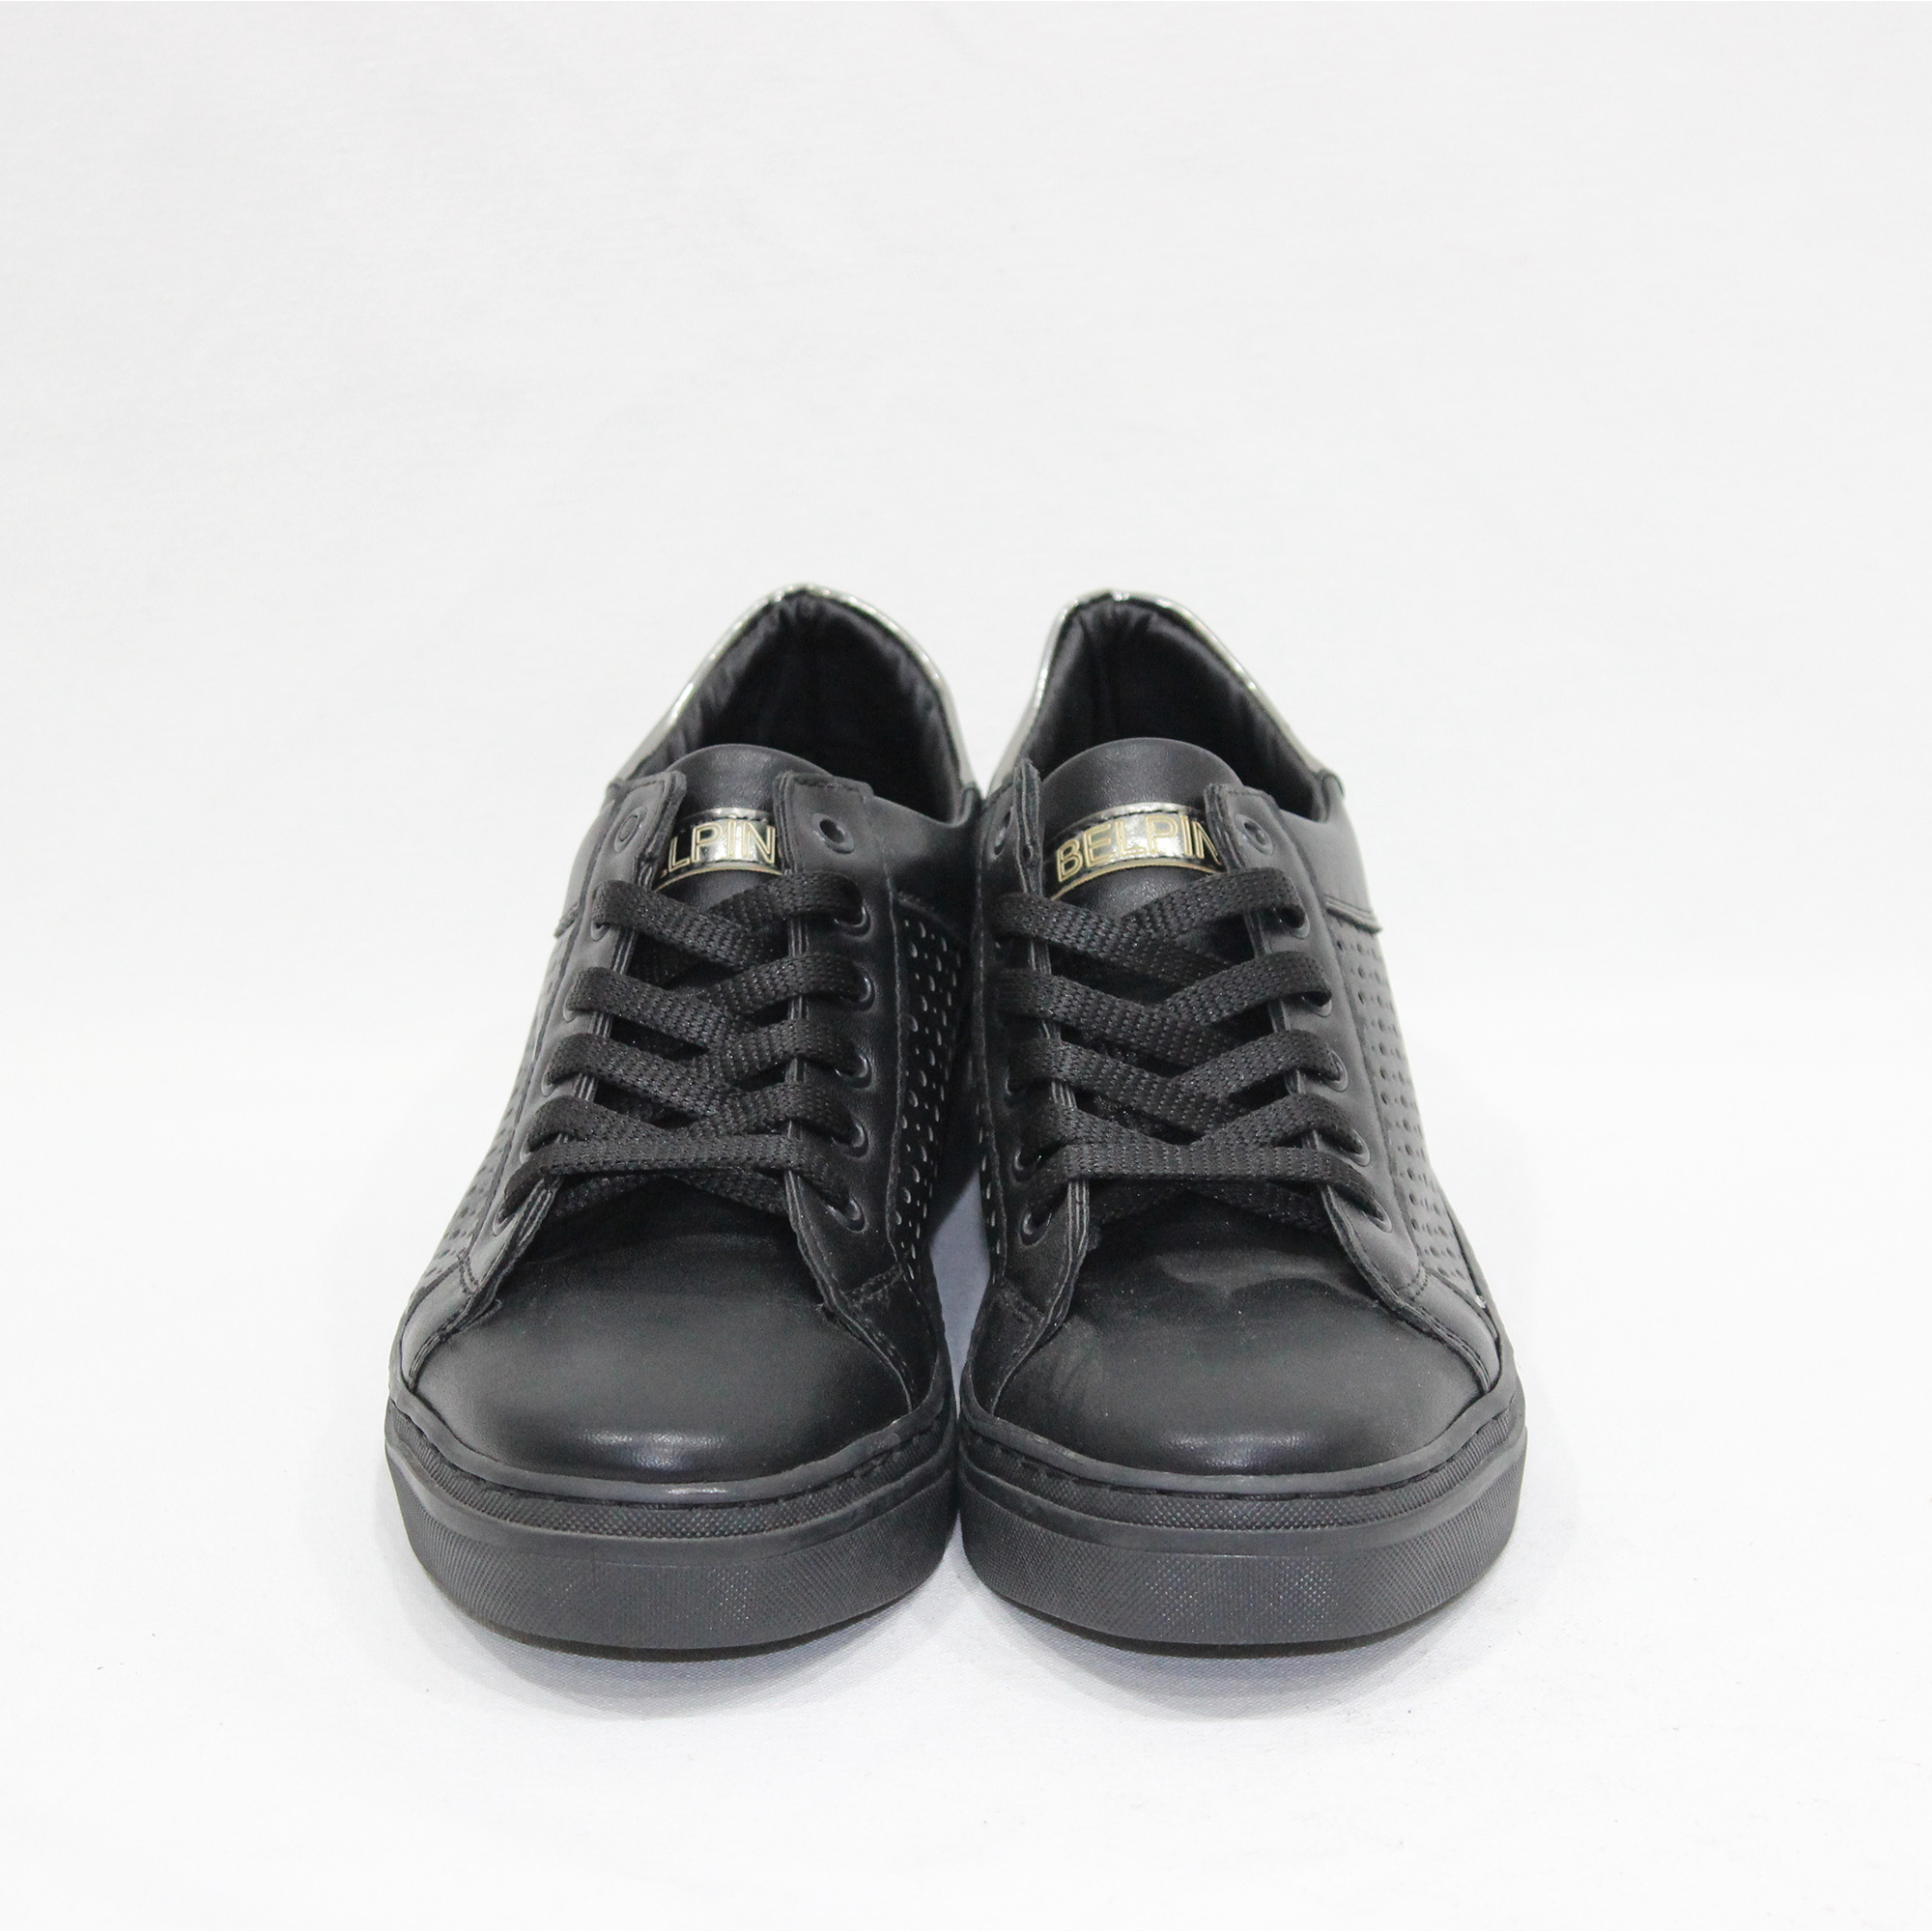 Belpino Lazerli Siyah Ayakkabı